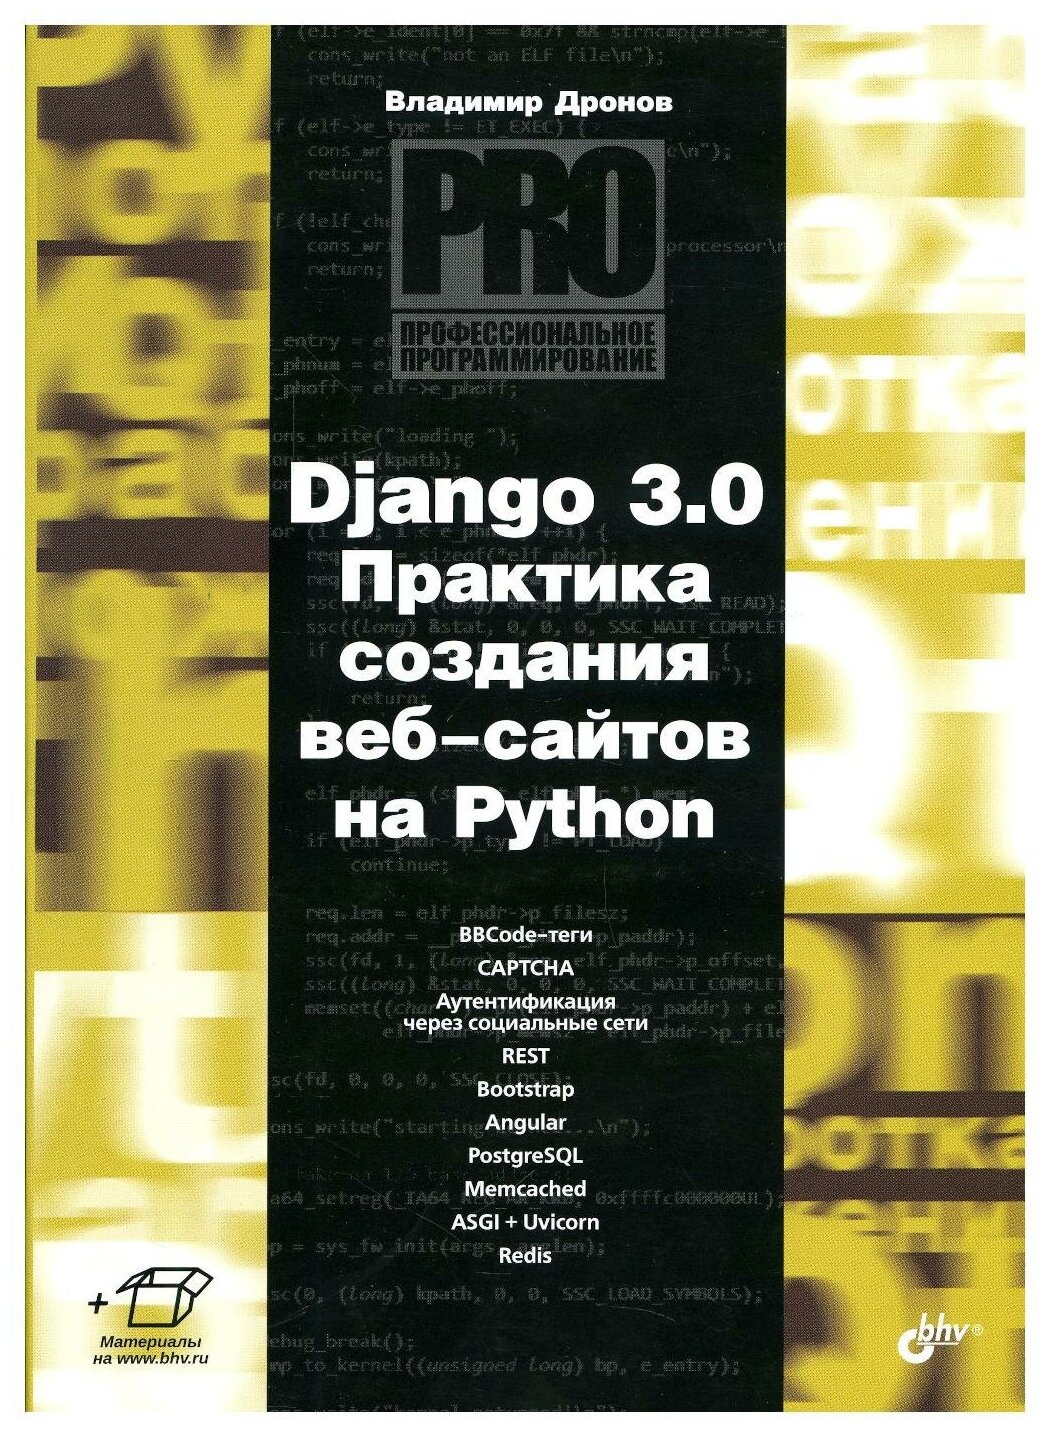 Дронов В.А. "Django 3.0. Практика создания веб-сайтов на Python"